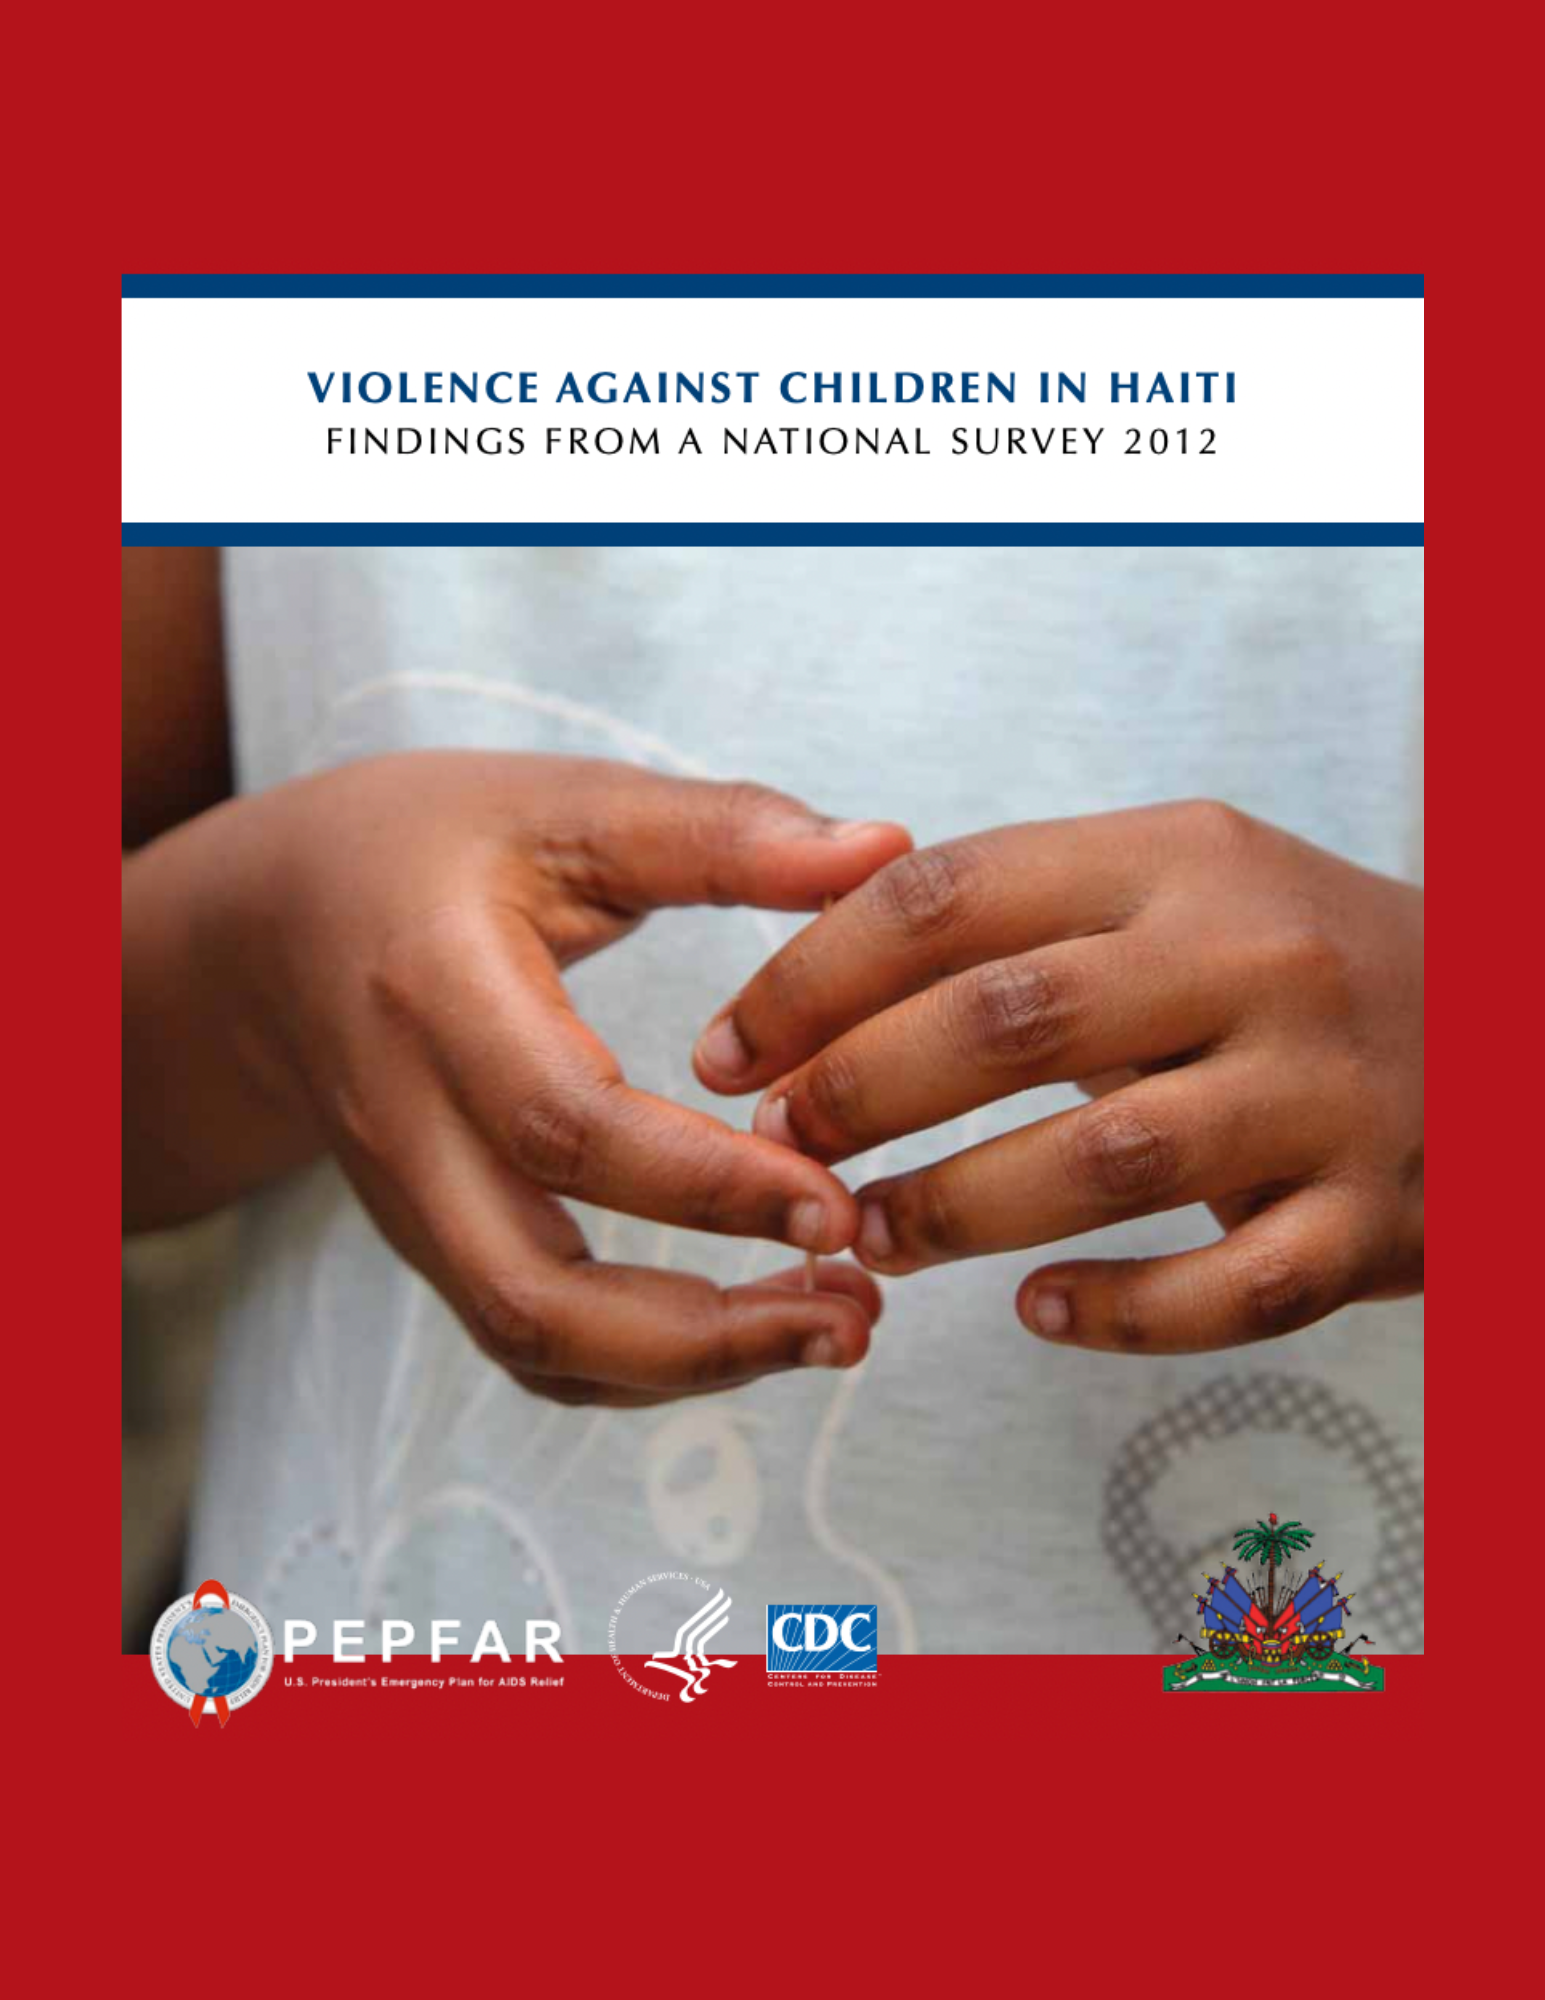 Haiti VACS Report 2014